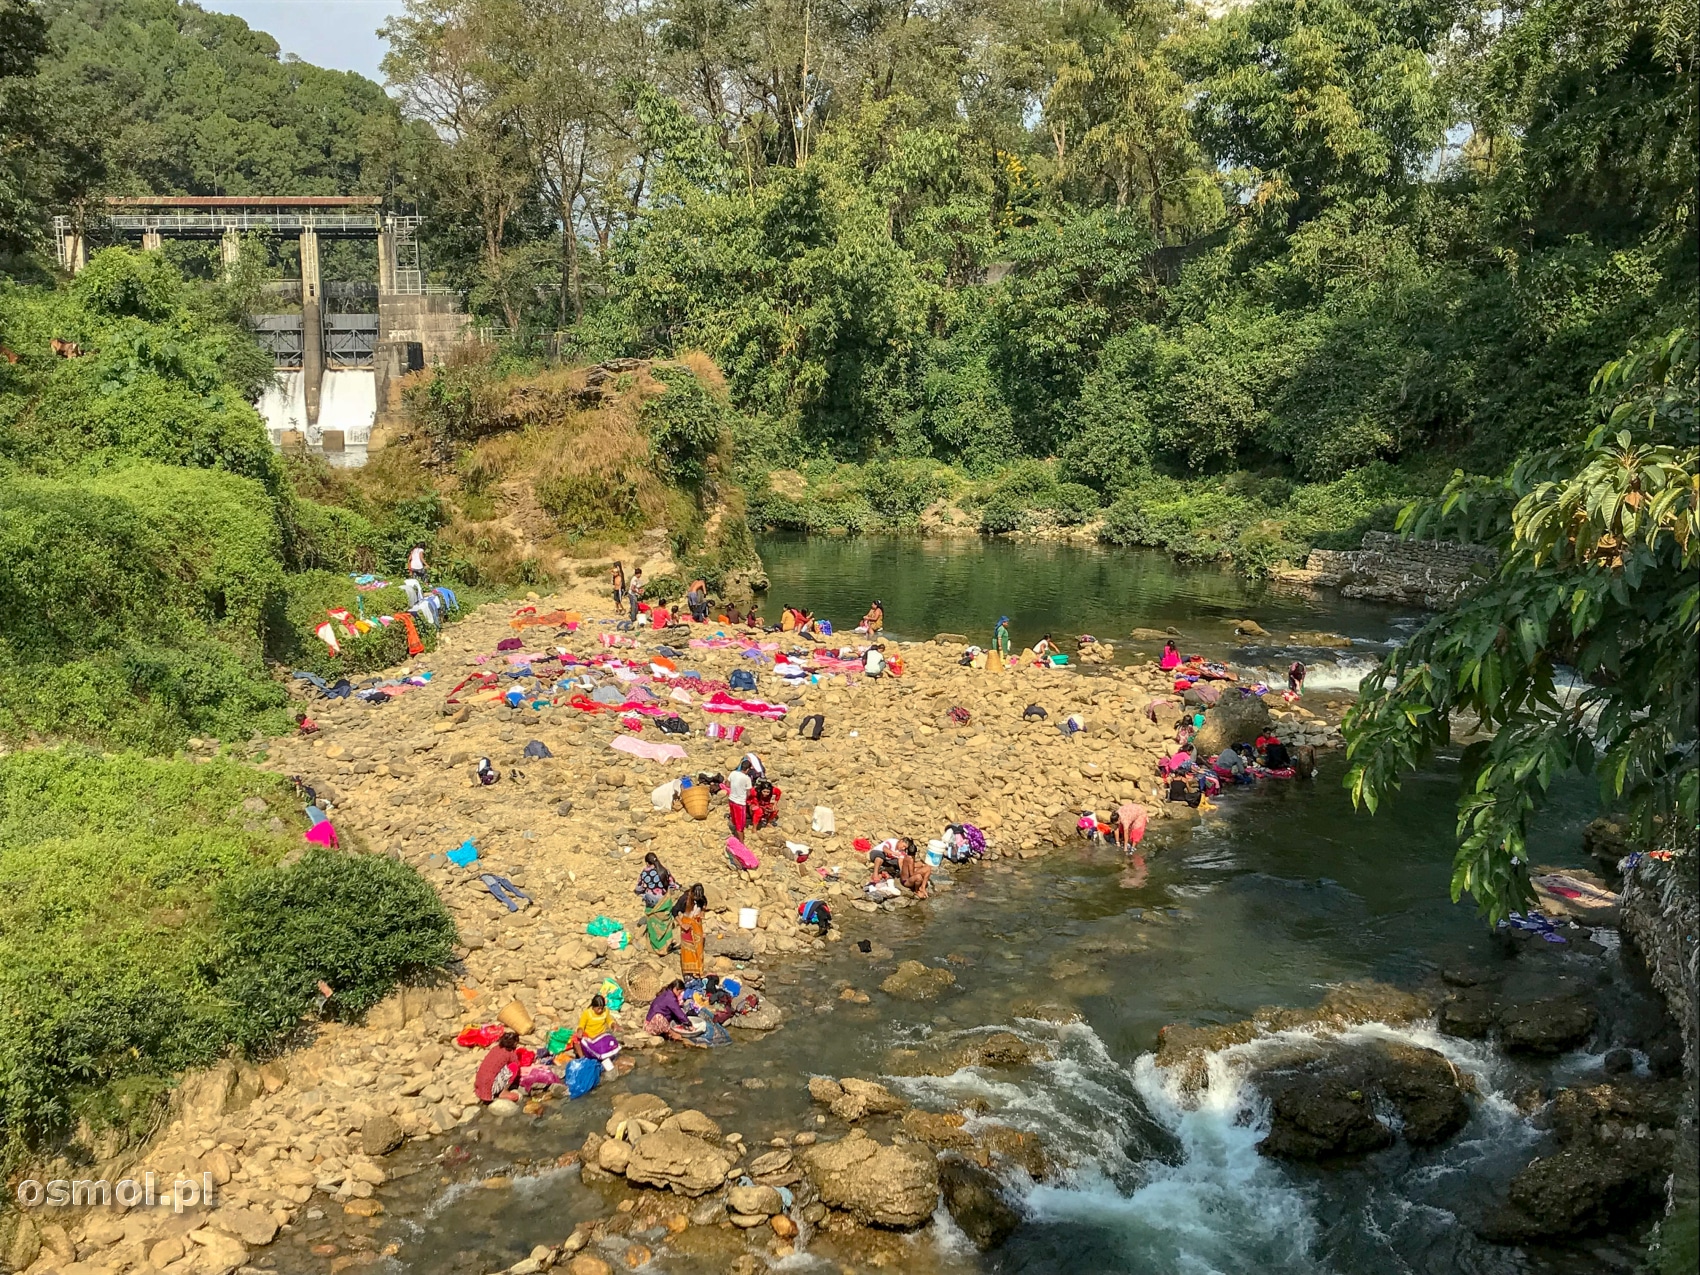 A tak wygląda pralnia w Pokharze. Pierze się w rzece, tuż obok innych piorących.